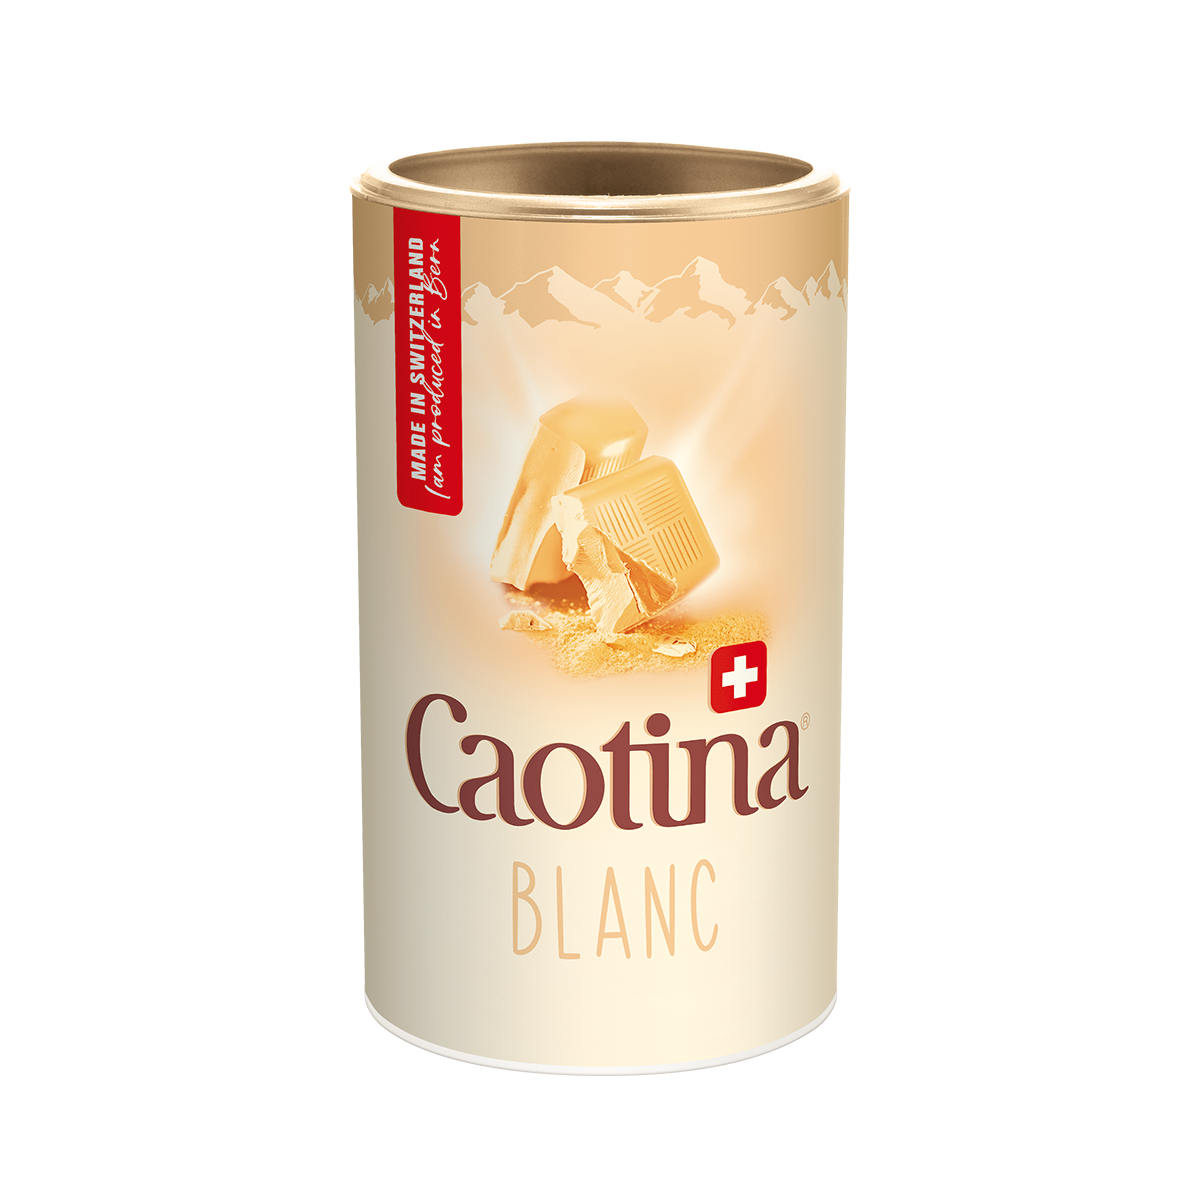  Caotina Blanc - die weisse Schokolade zum Trinken